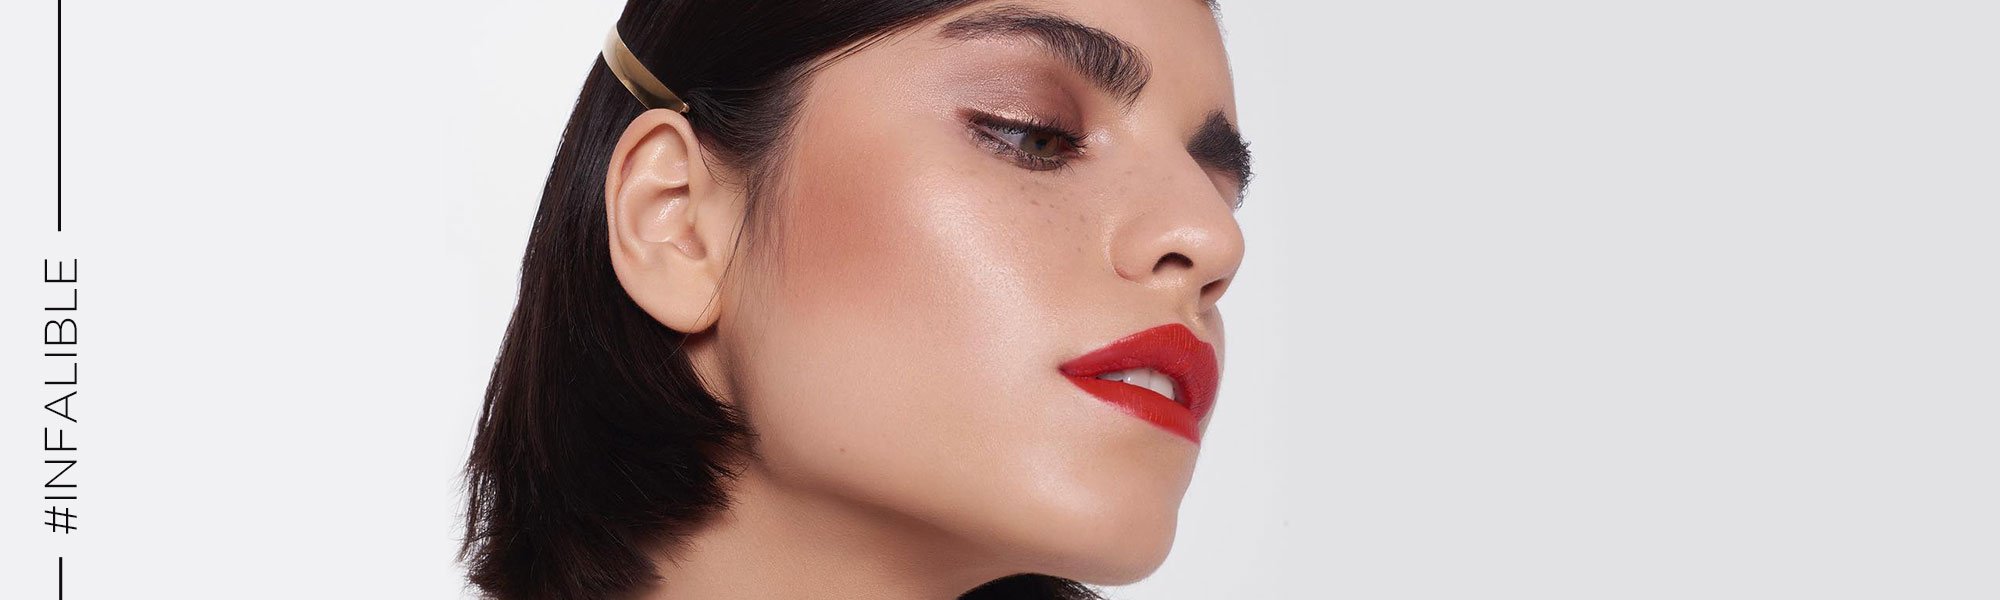 Cómo usar los polvos para sellar maquillaje | L’Oréal Paris